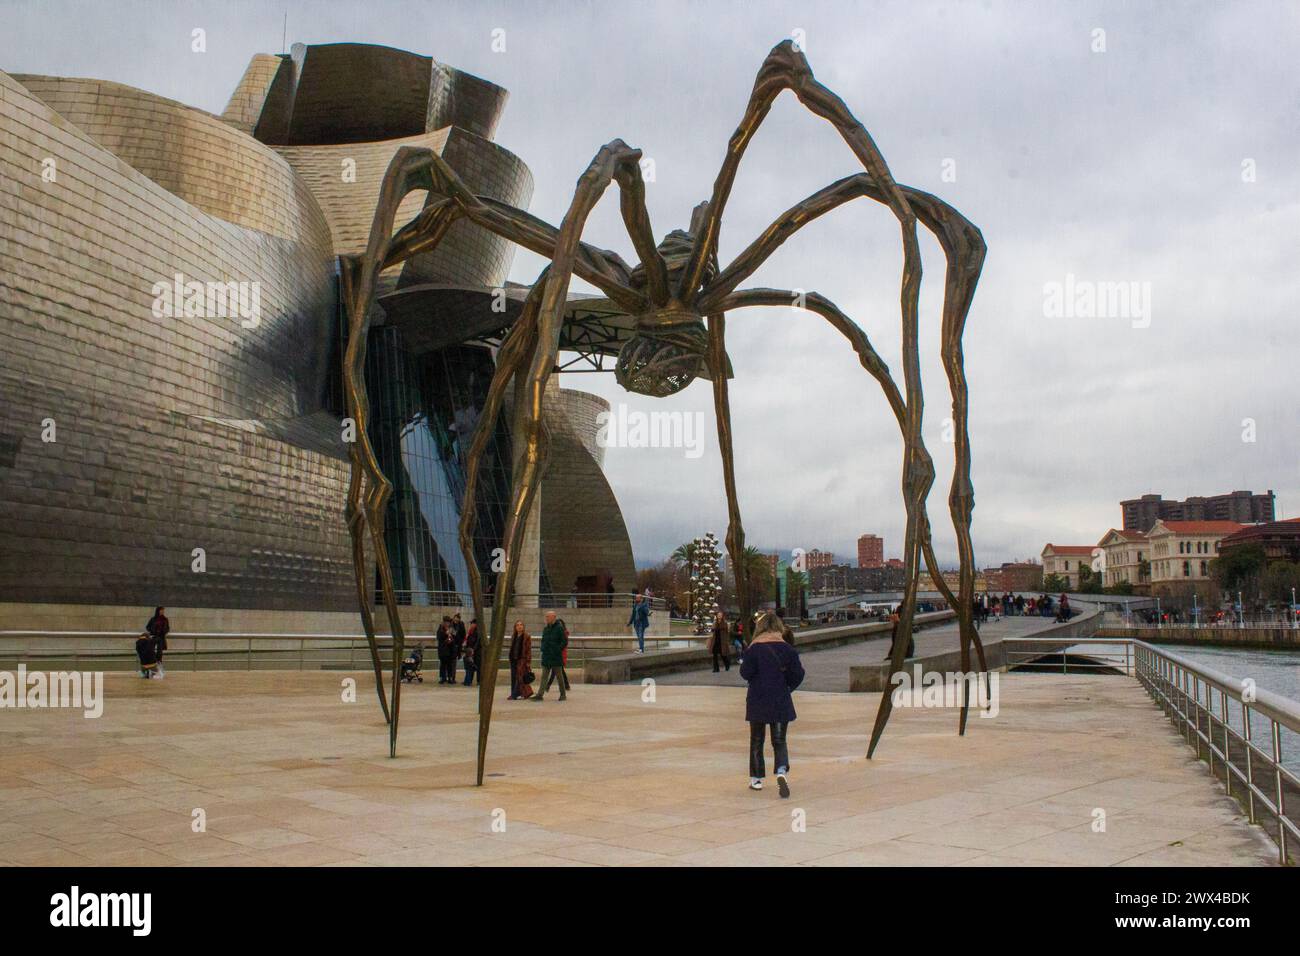 Images du bâtiment du musée Guggenheim à Bilbao, Espagne Banque D'Images